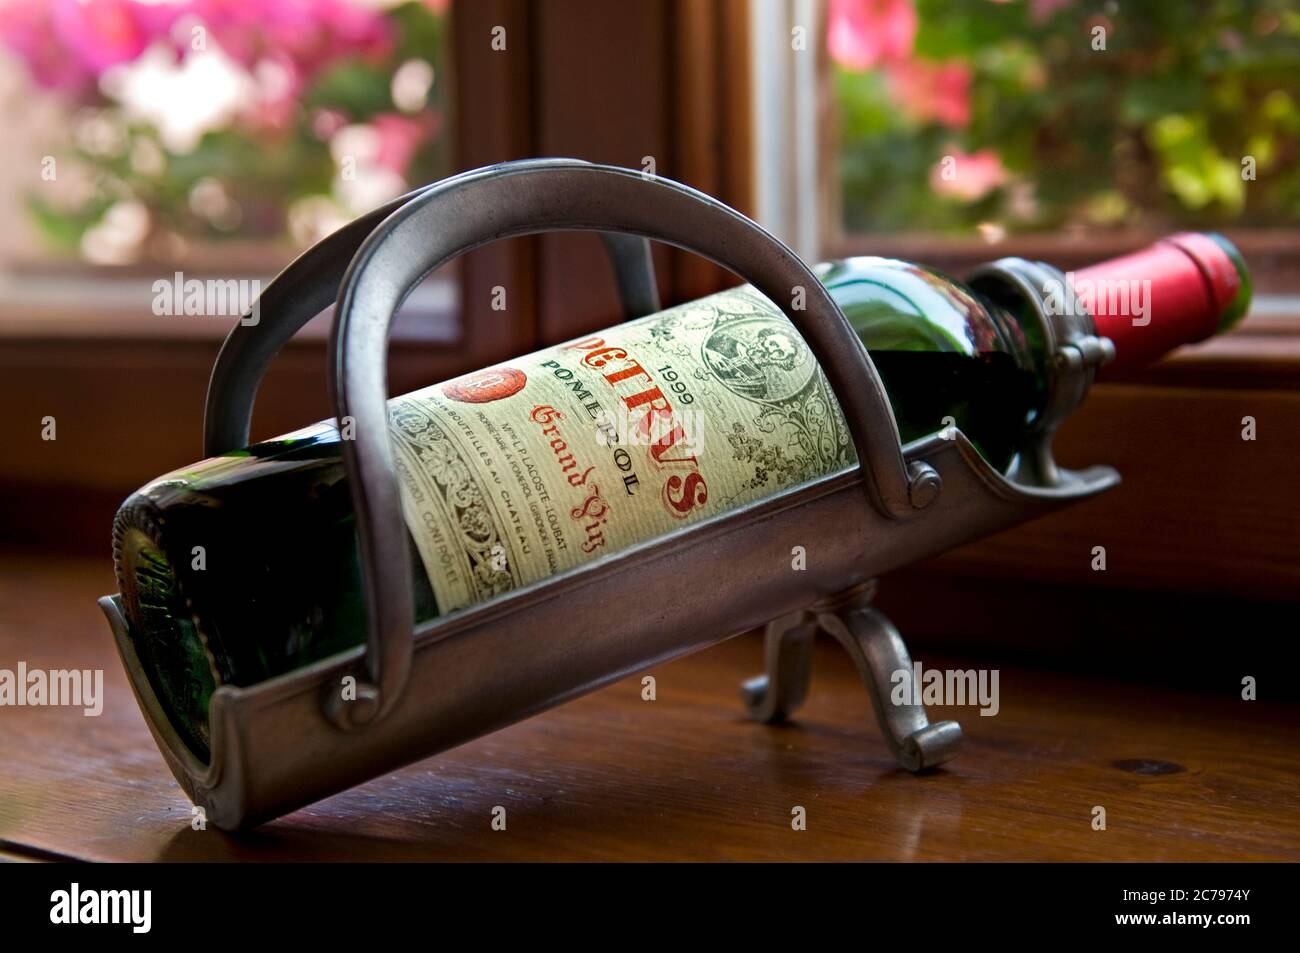 Chateau Petrus Pomerol 1999 feiner roter Bordeaux-Wein, offene Flasche belüftet am Tisch in Vintage-Metall-Ausgiessmaschine Flaschenwiege im luxuriösen floralen Restaurant Speisesaal Stockfoto